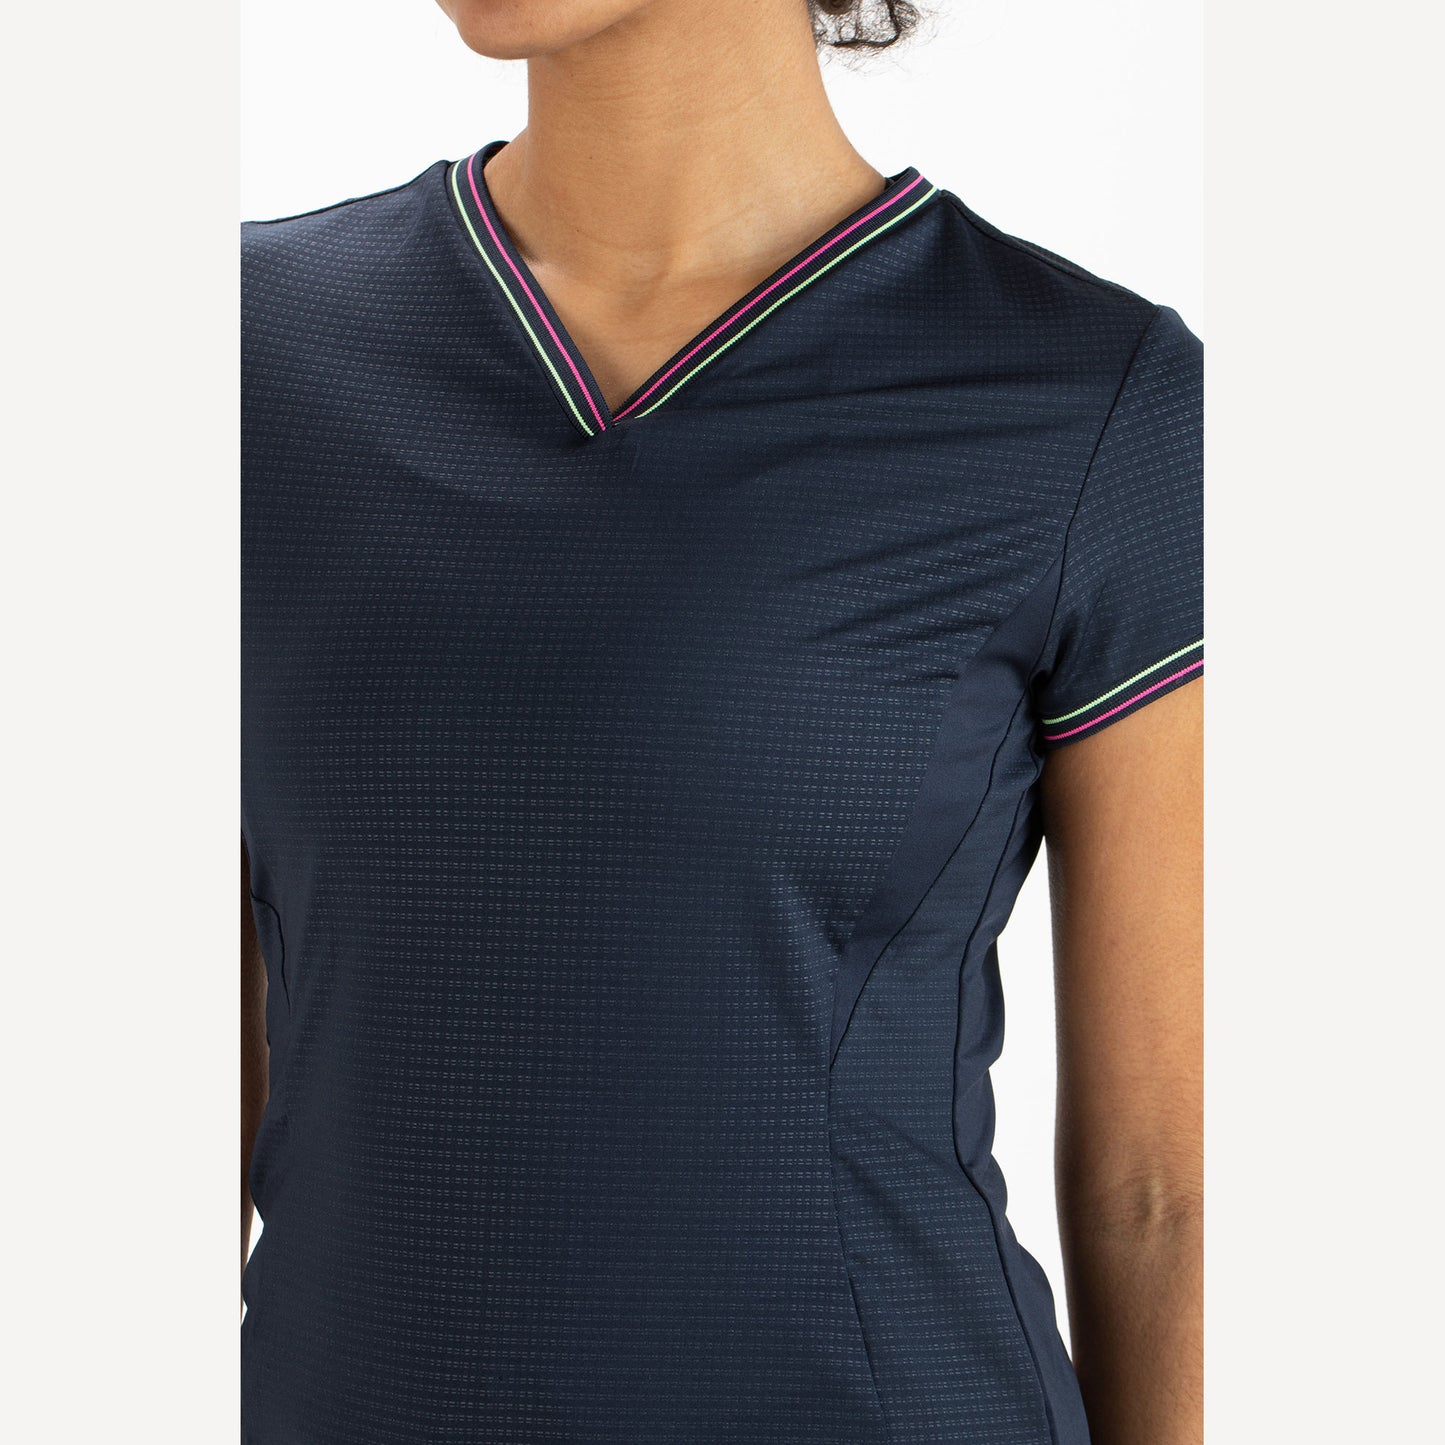 Sjeng Sports Dorothee Women's Tennis Shirt Blue (3)